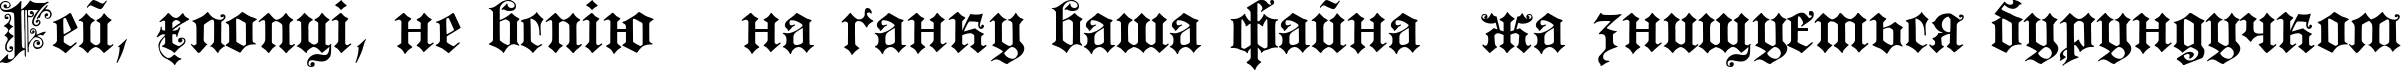 Пример написания шрифтом Fortuna Gothic FlorishC текста на украинском